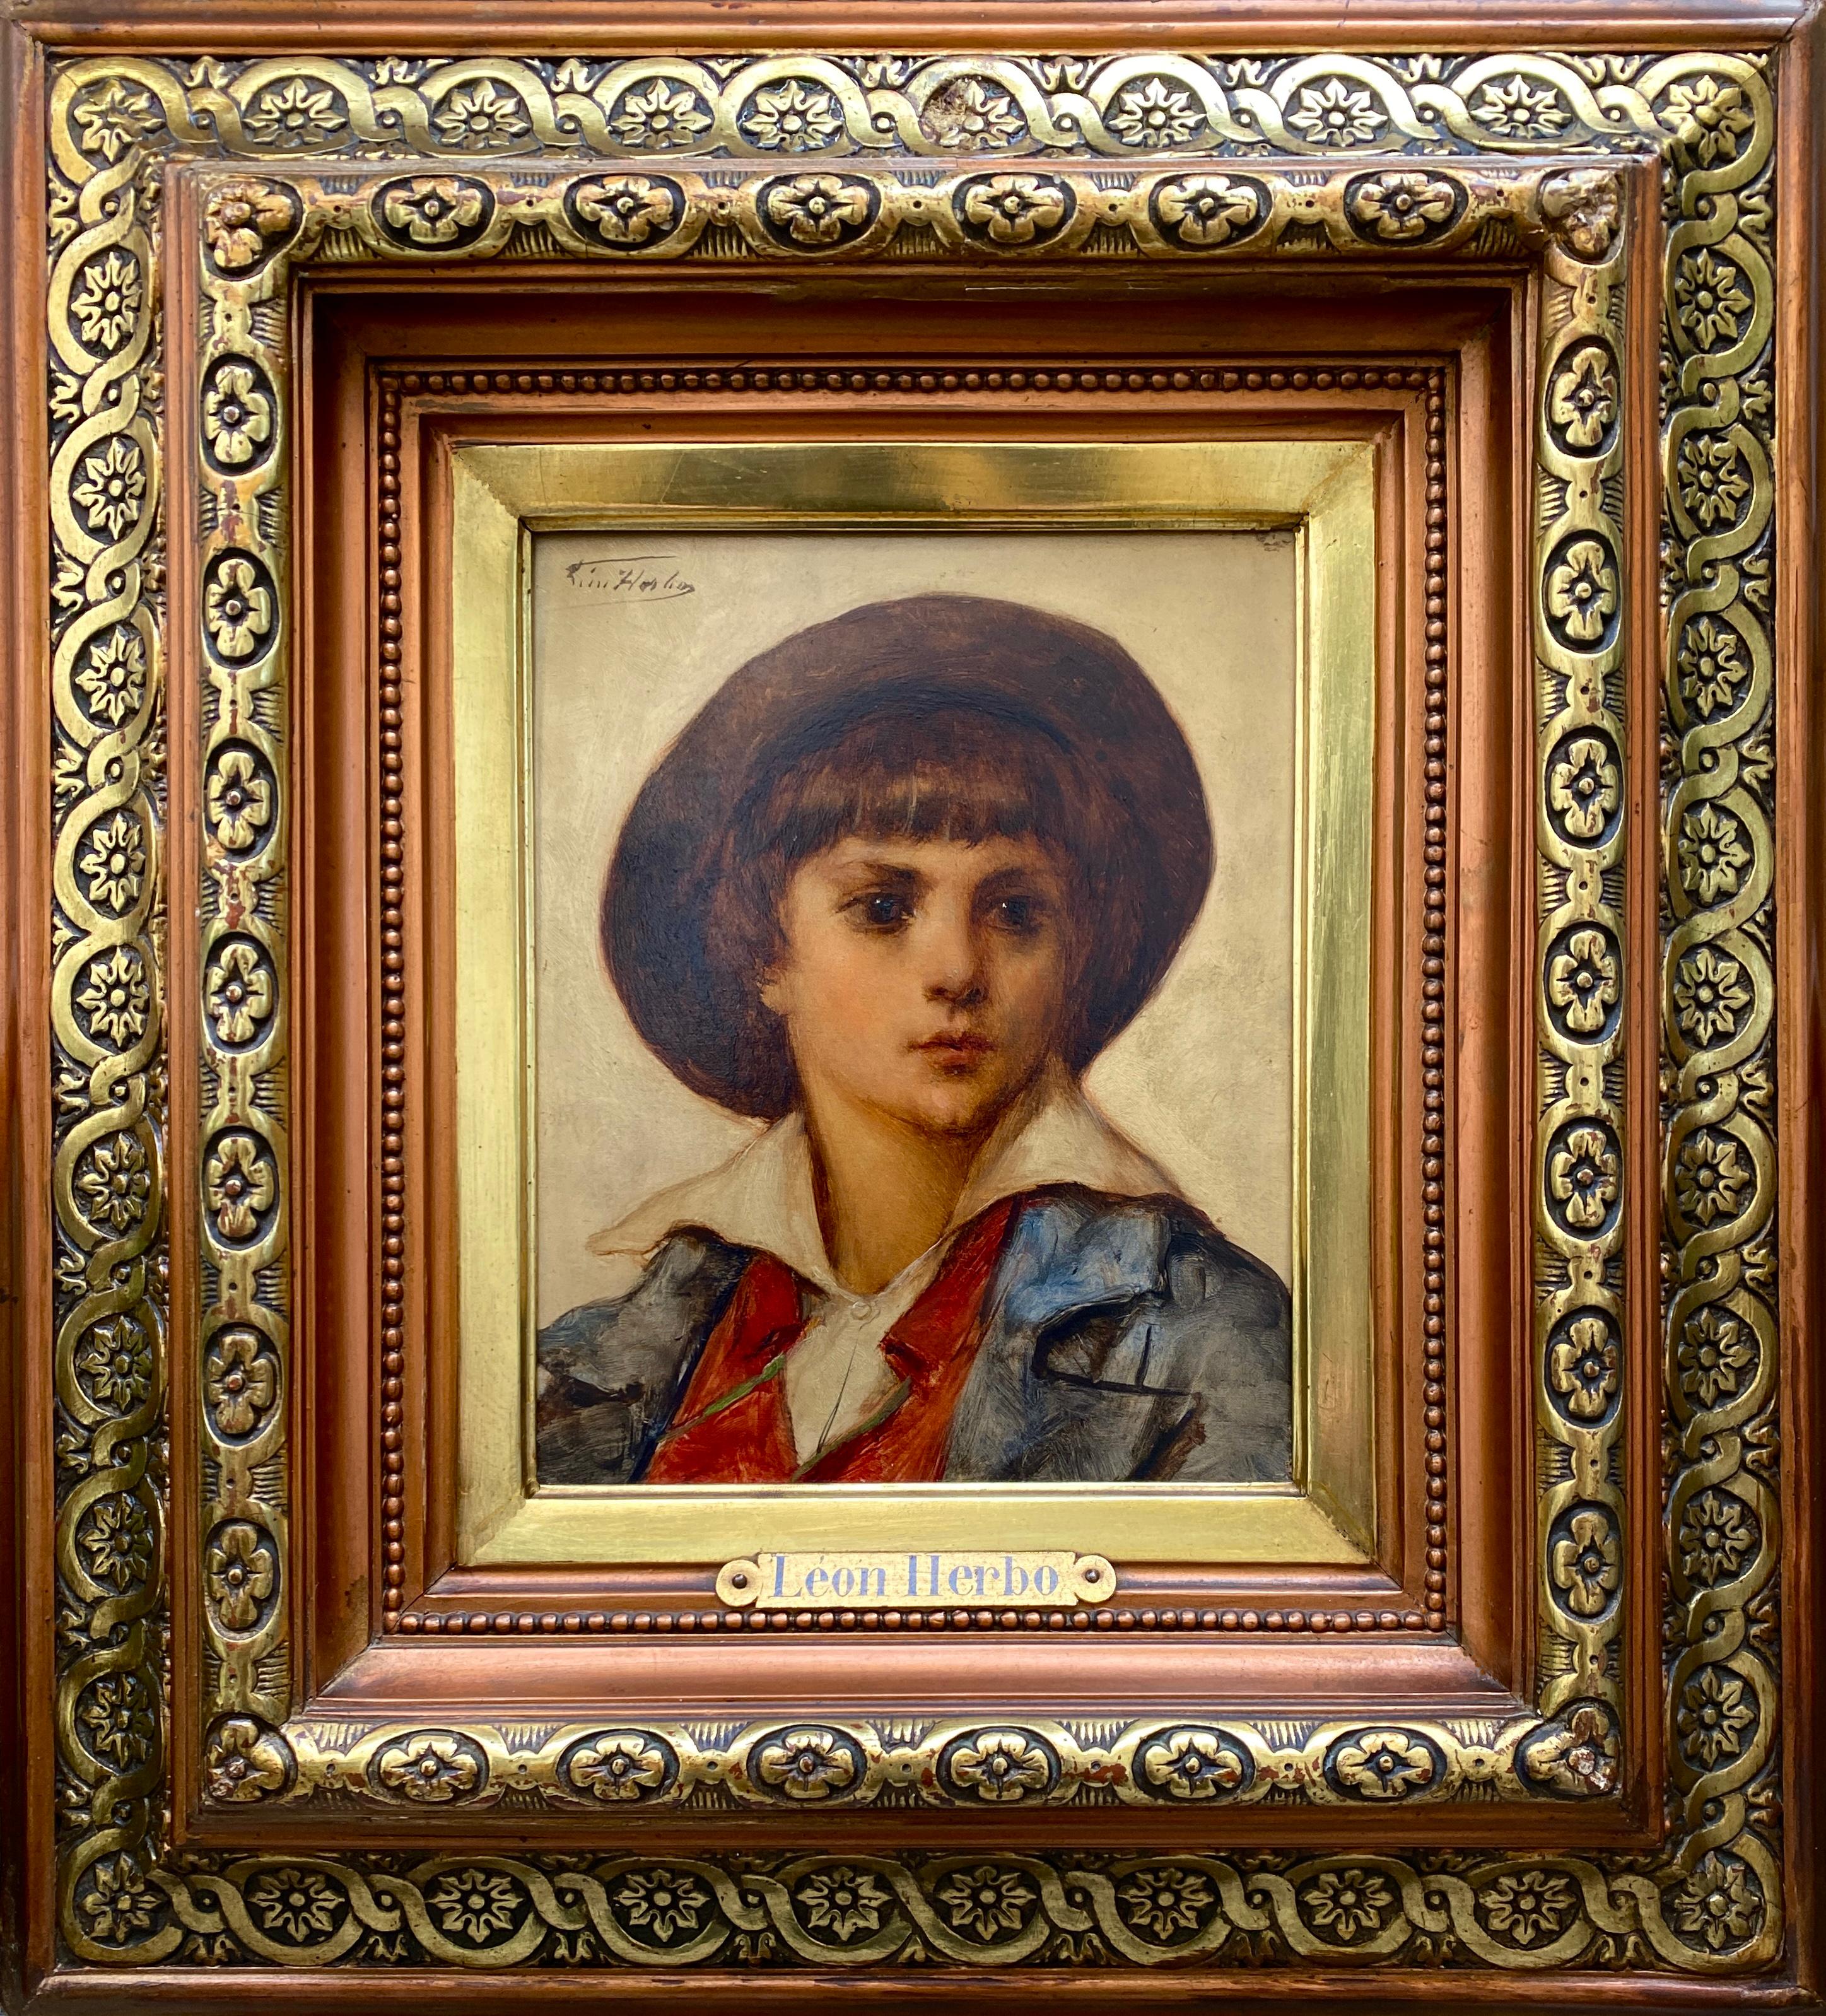 Leon Herbo Portrait Painting – Léon Herbo, Templeuve 1850 - 1907 Ixelles, belgischer Maler, 'Bildnis eines Jungen'